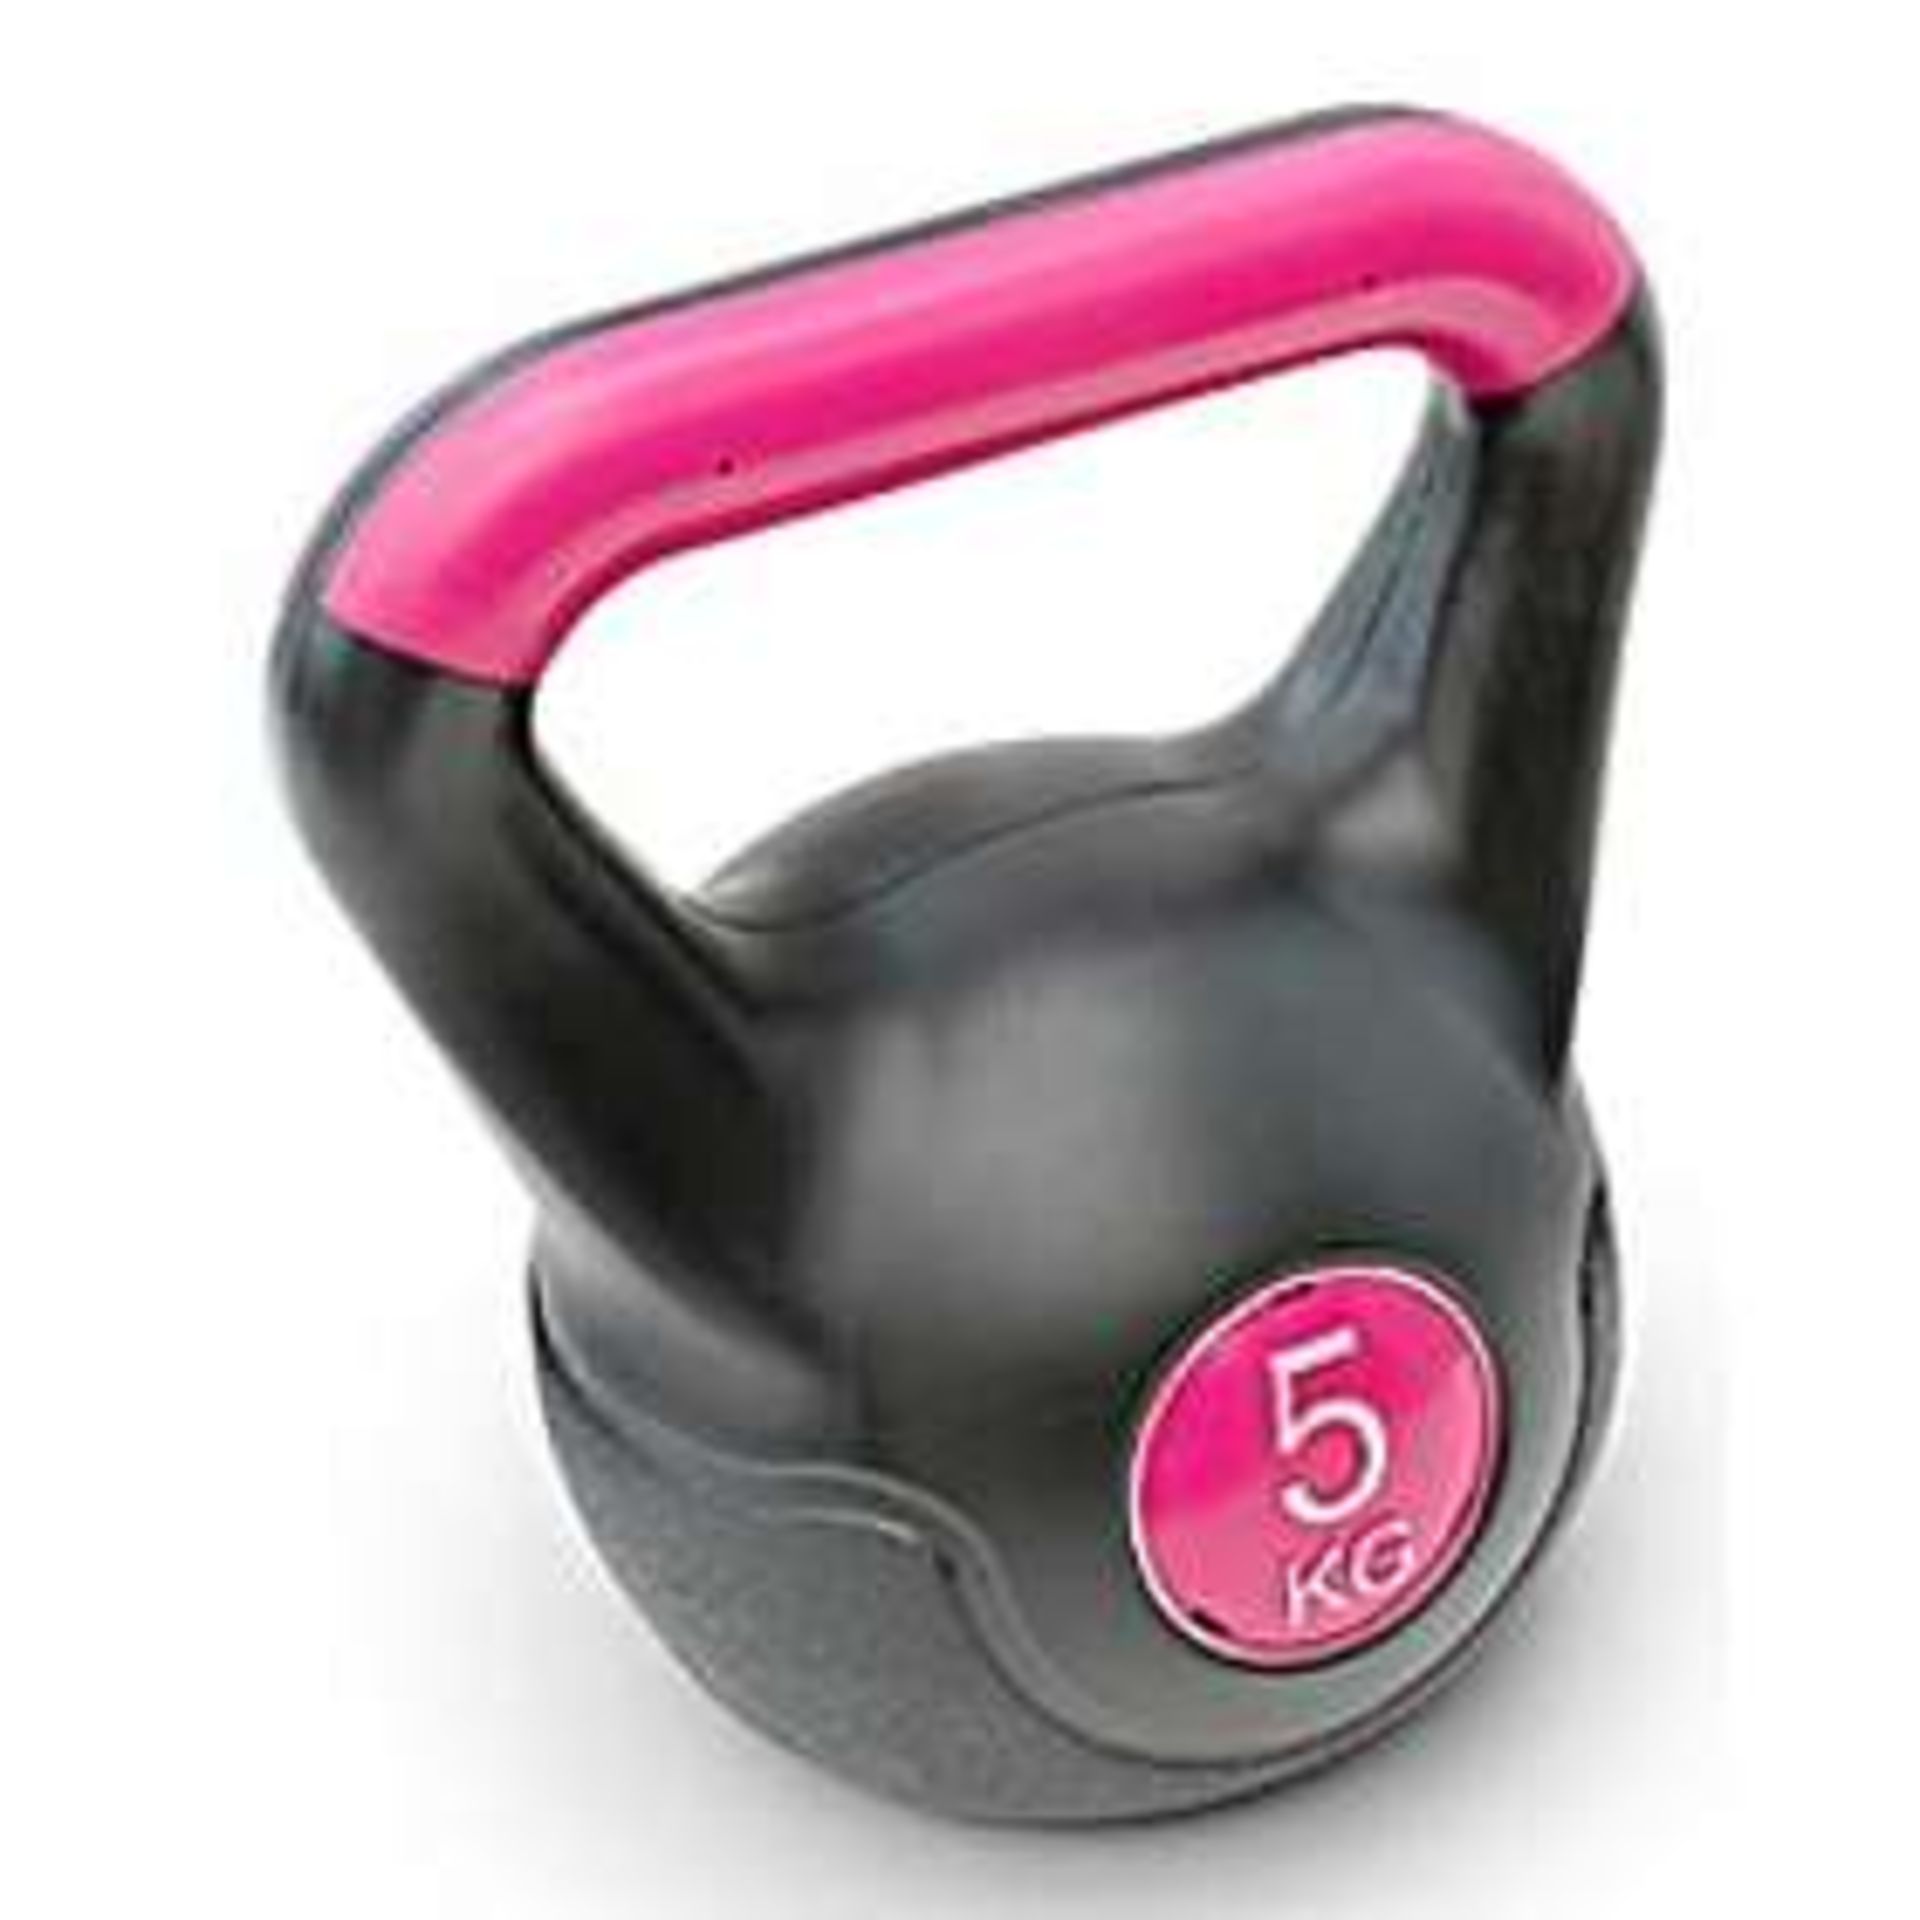 V Brand New 5Kgs Kettlebell - Ideal For Both Men & Women - Suitable For All Fitness Levels -